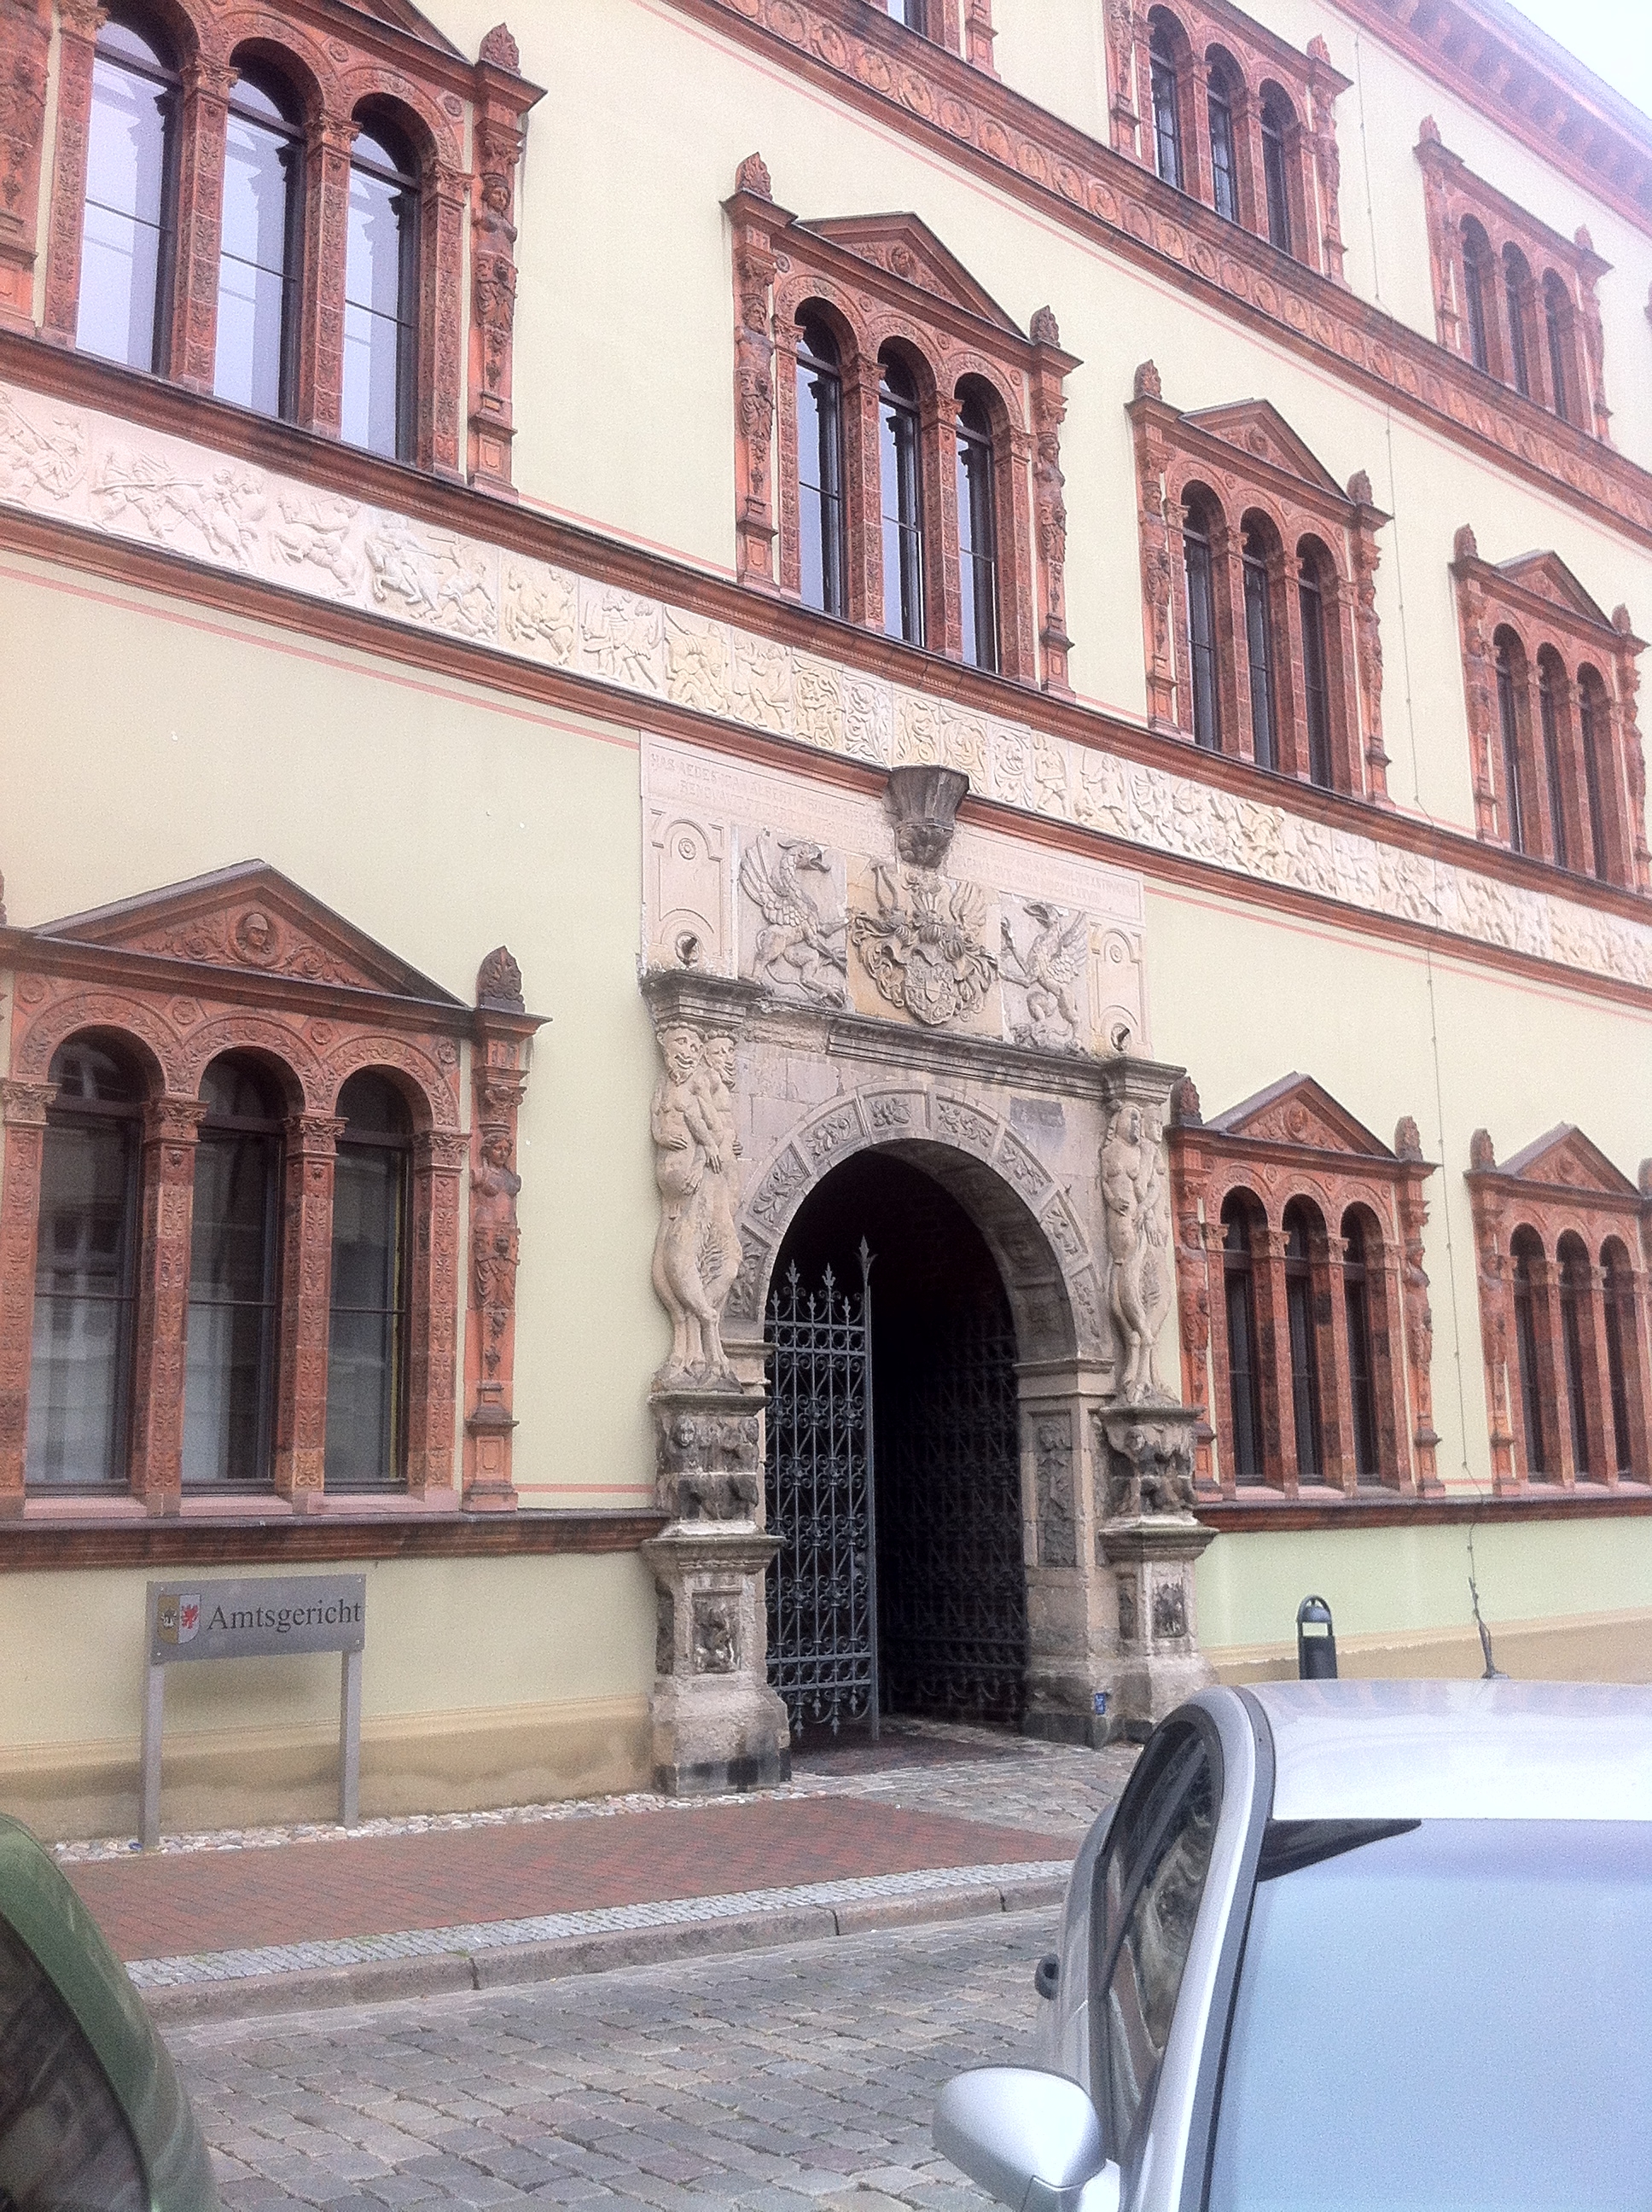 Amtsgericht in Wismar